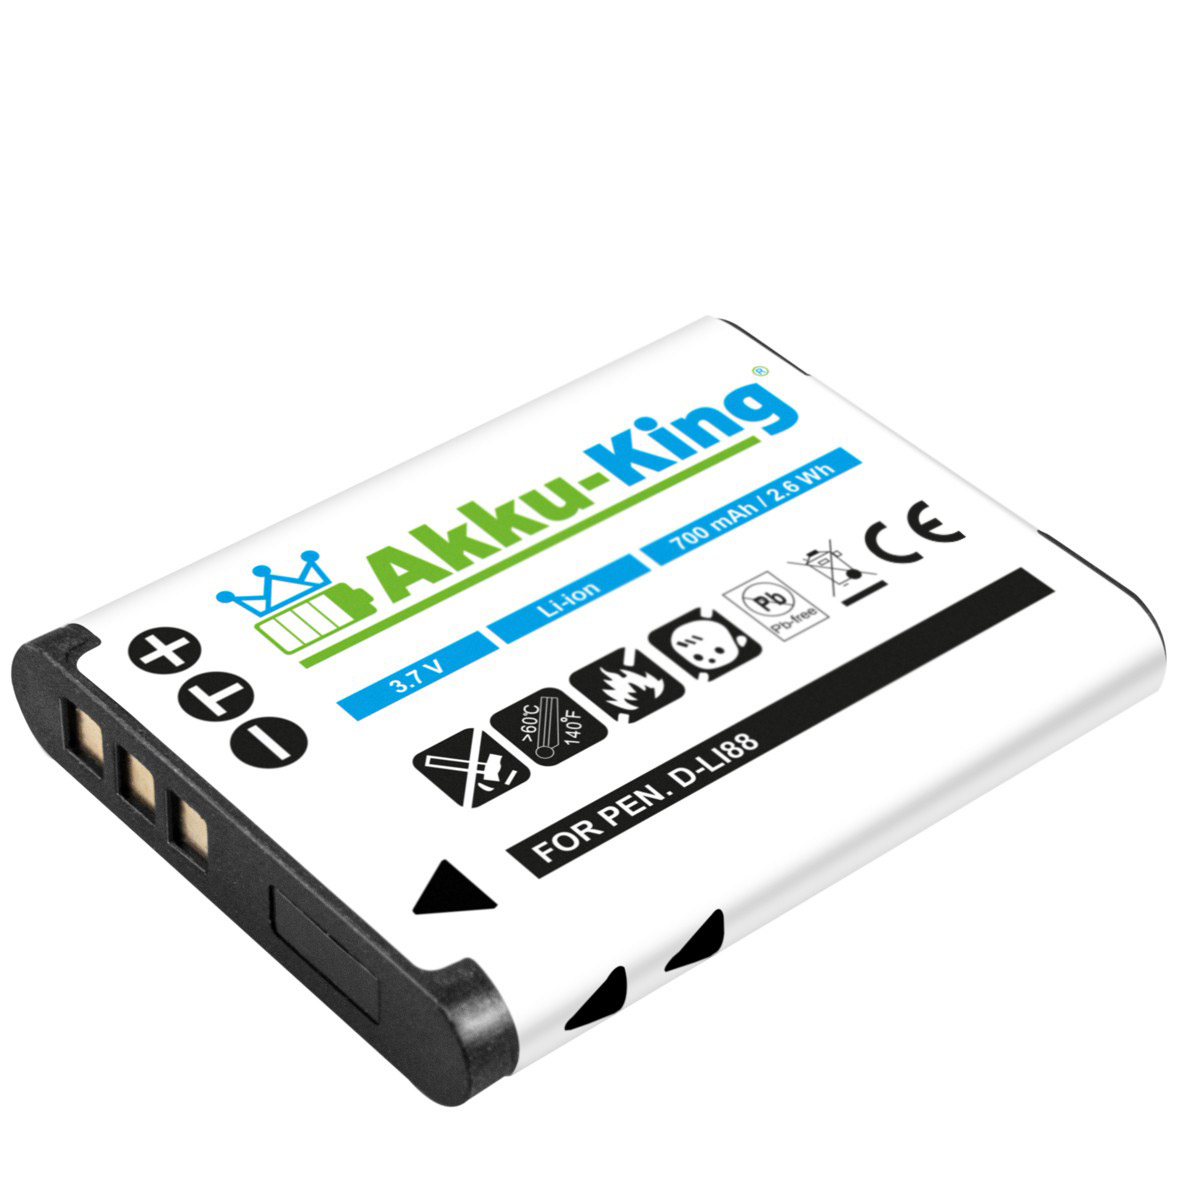 kompatibel Li-Ion AKKU-KING PX1686E-1BRS Kamera-Akku, Toshiba mit Volt, Akku 3.7 700mAh